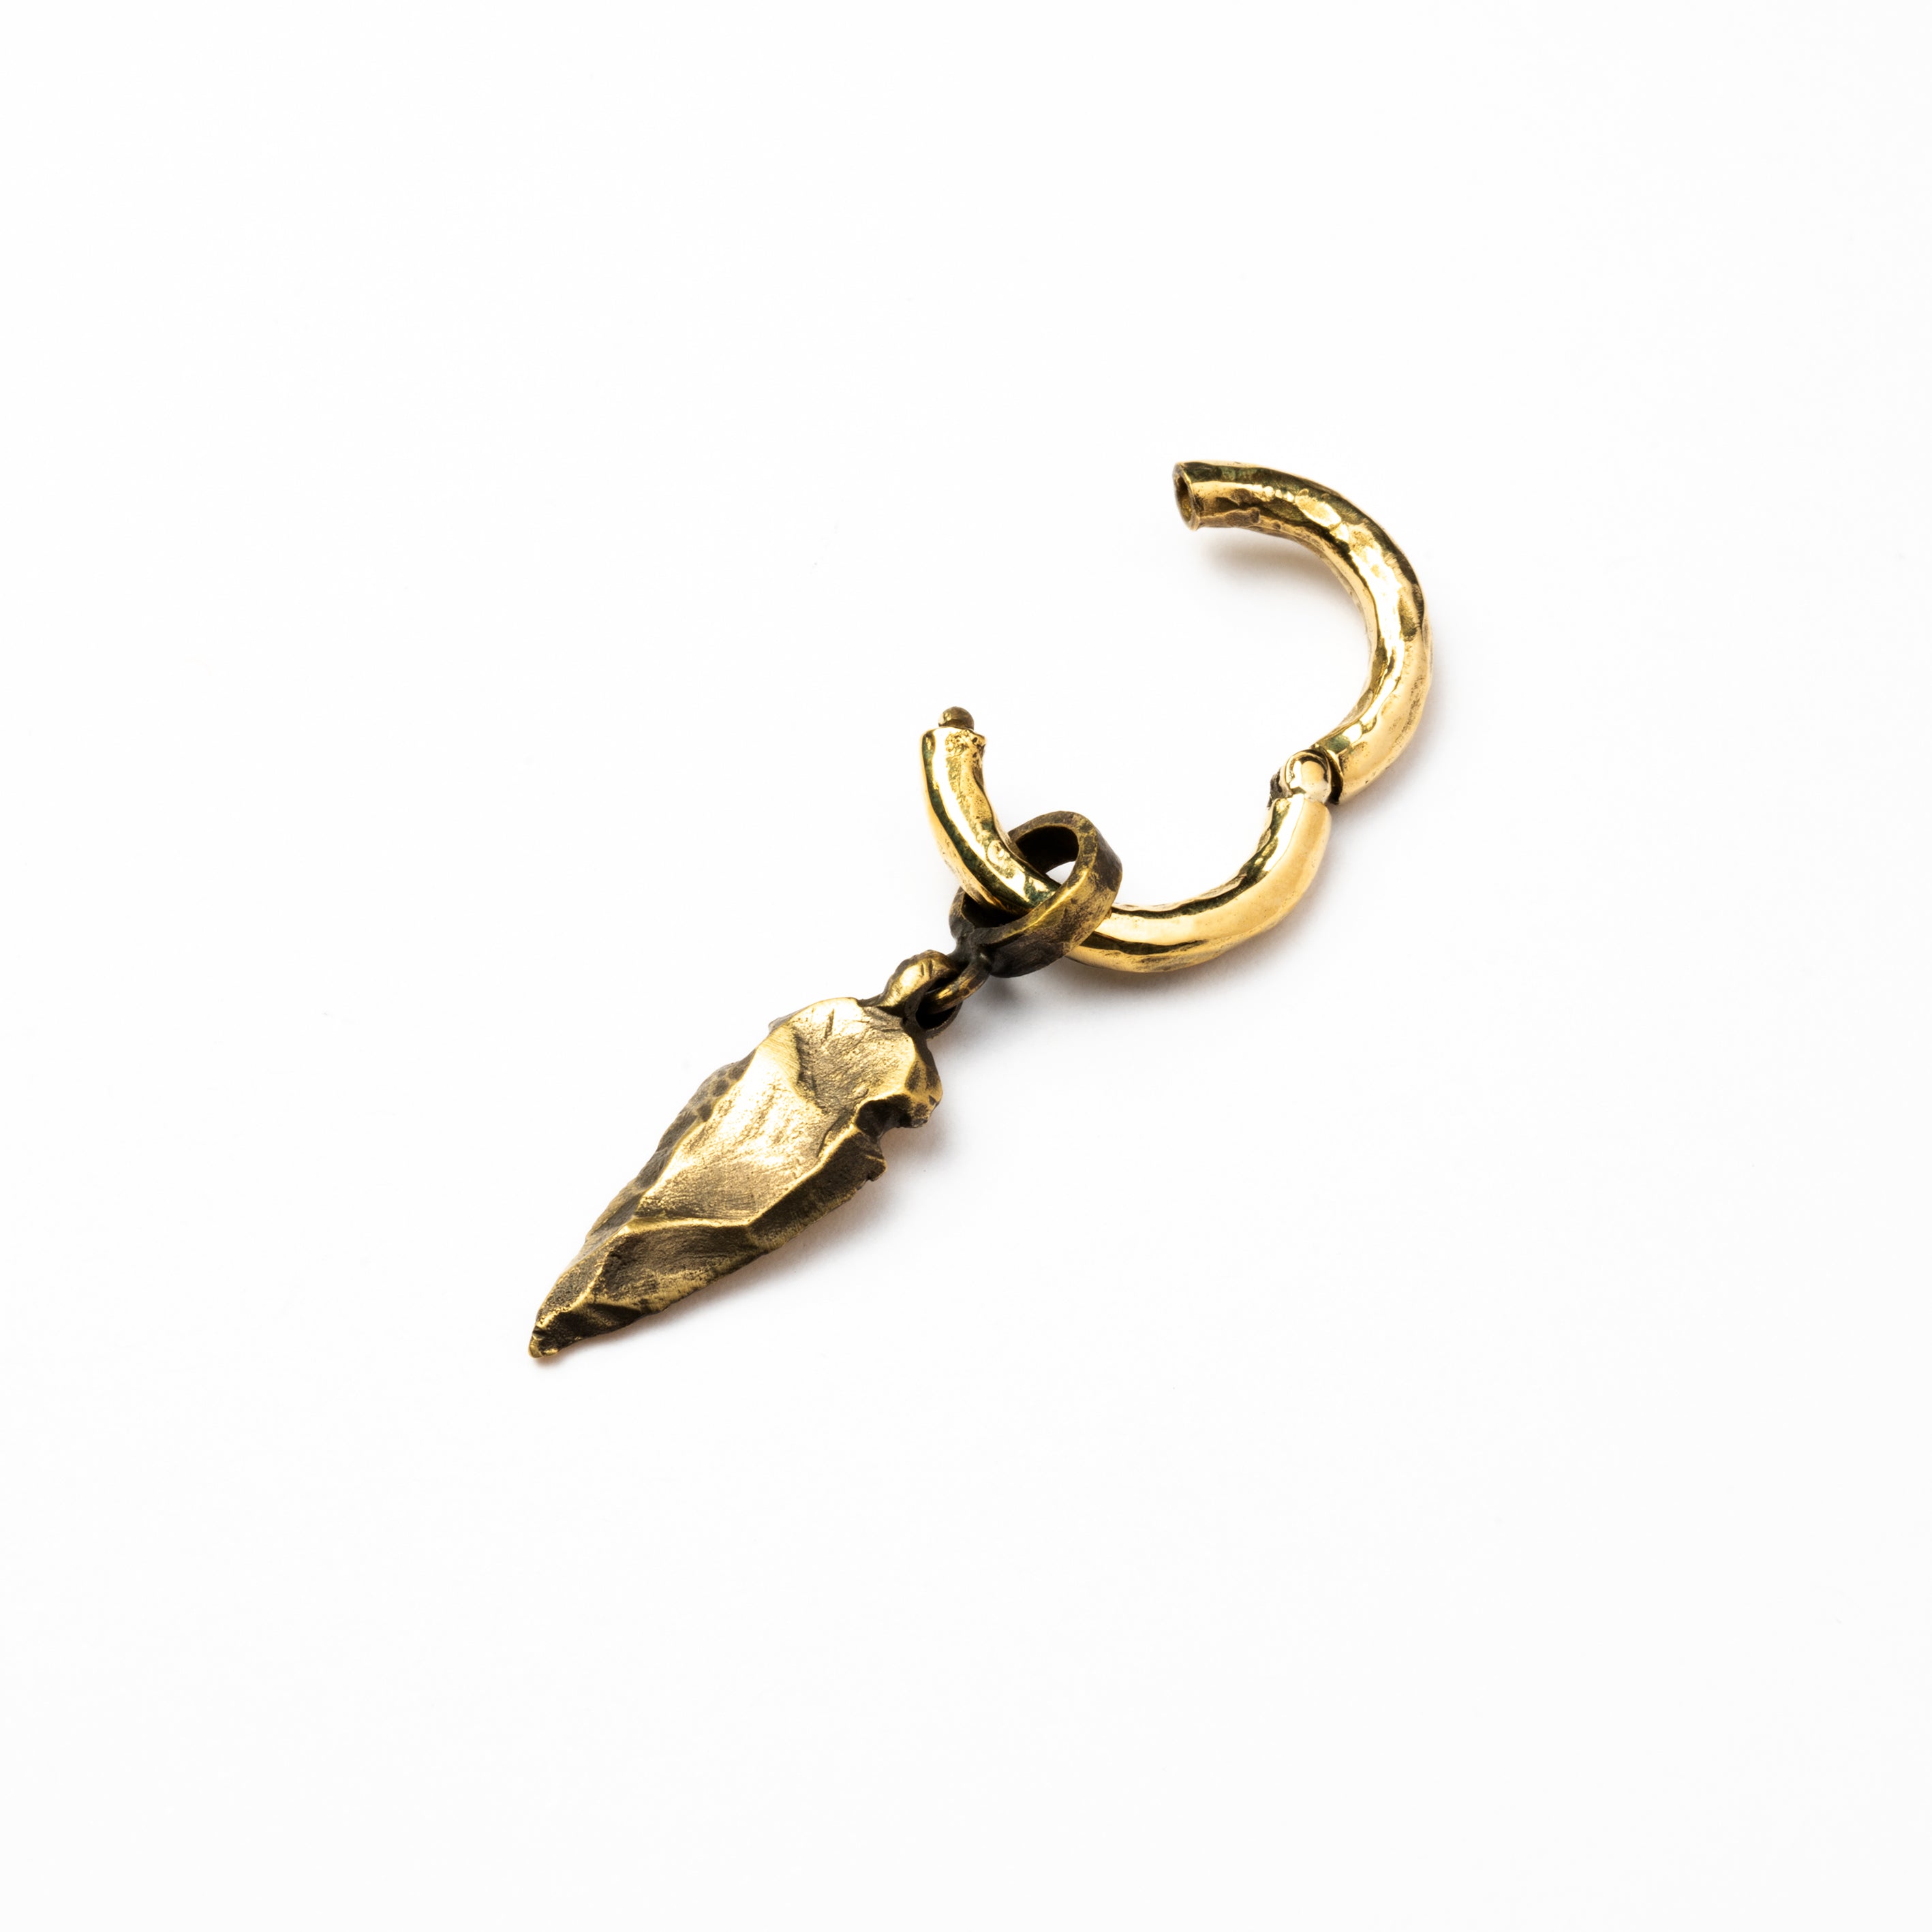 single golden brass hammered hoop ear weight hanger with arrowhead pendant open mode view